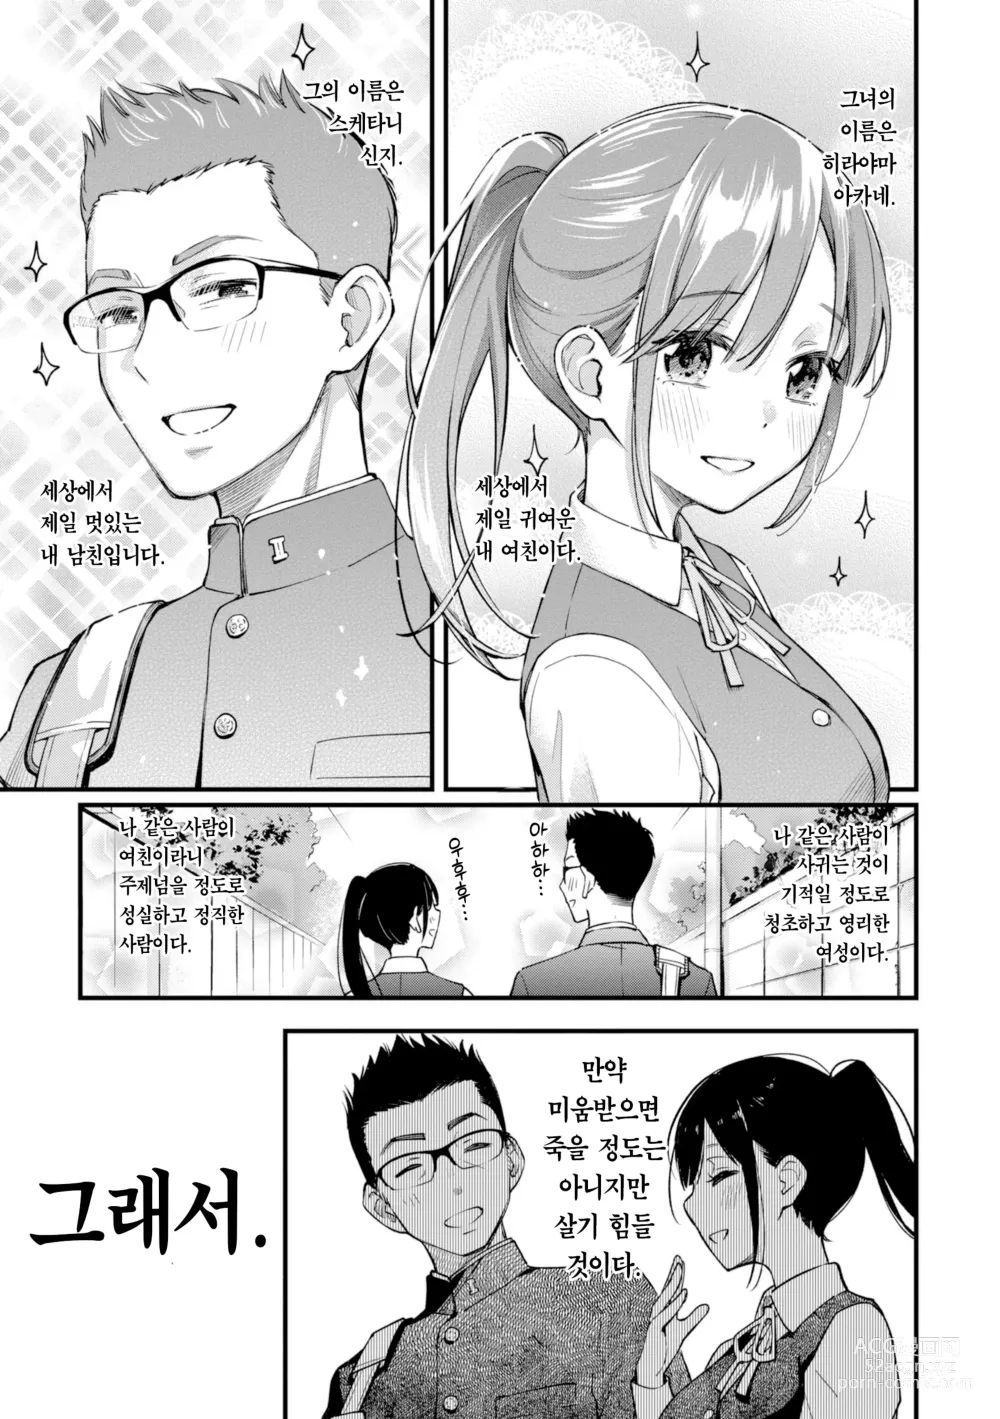 Page 11 of manga 처녀는 발정나면 안 되나요? (decensored)